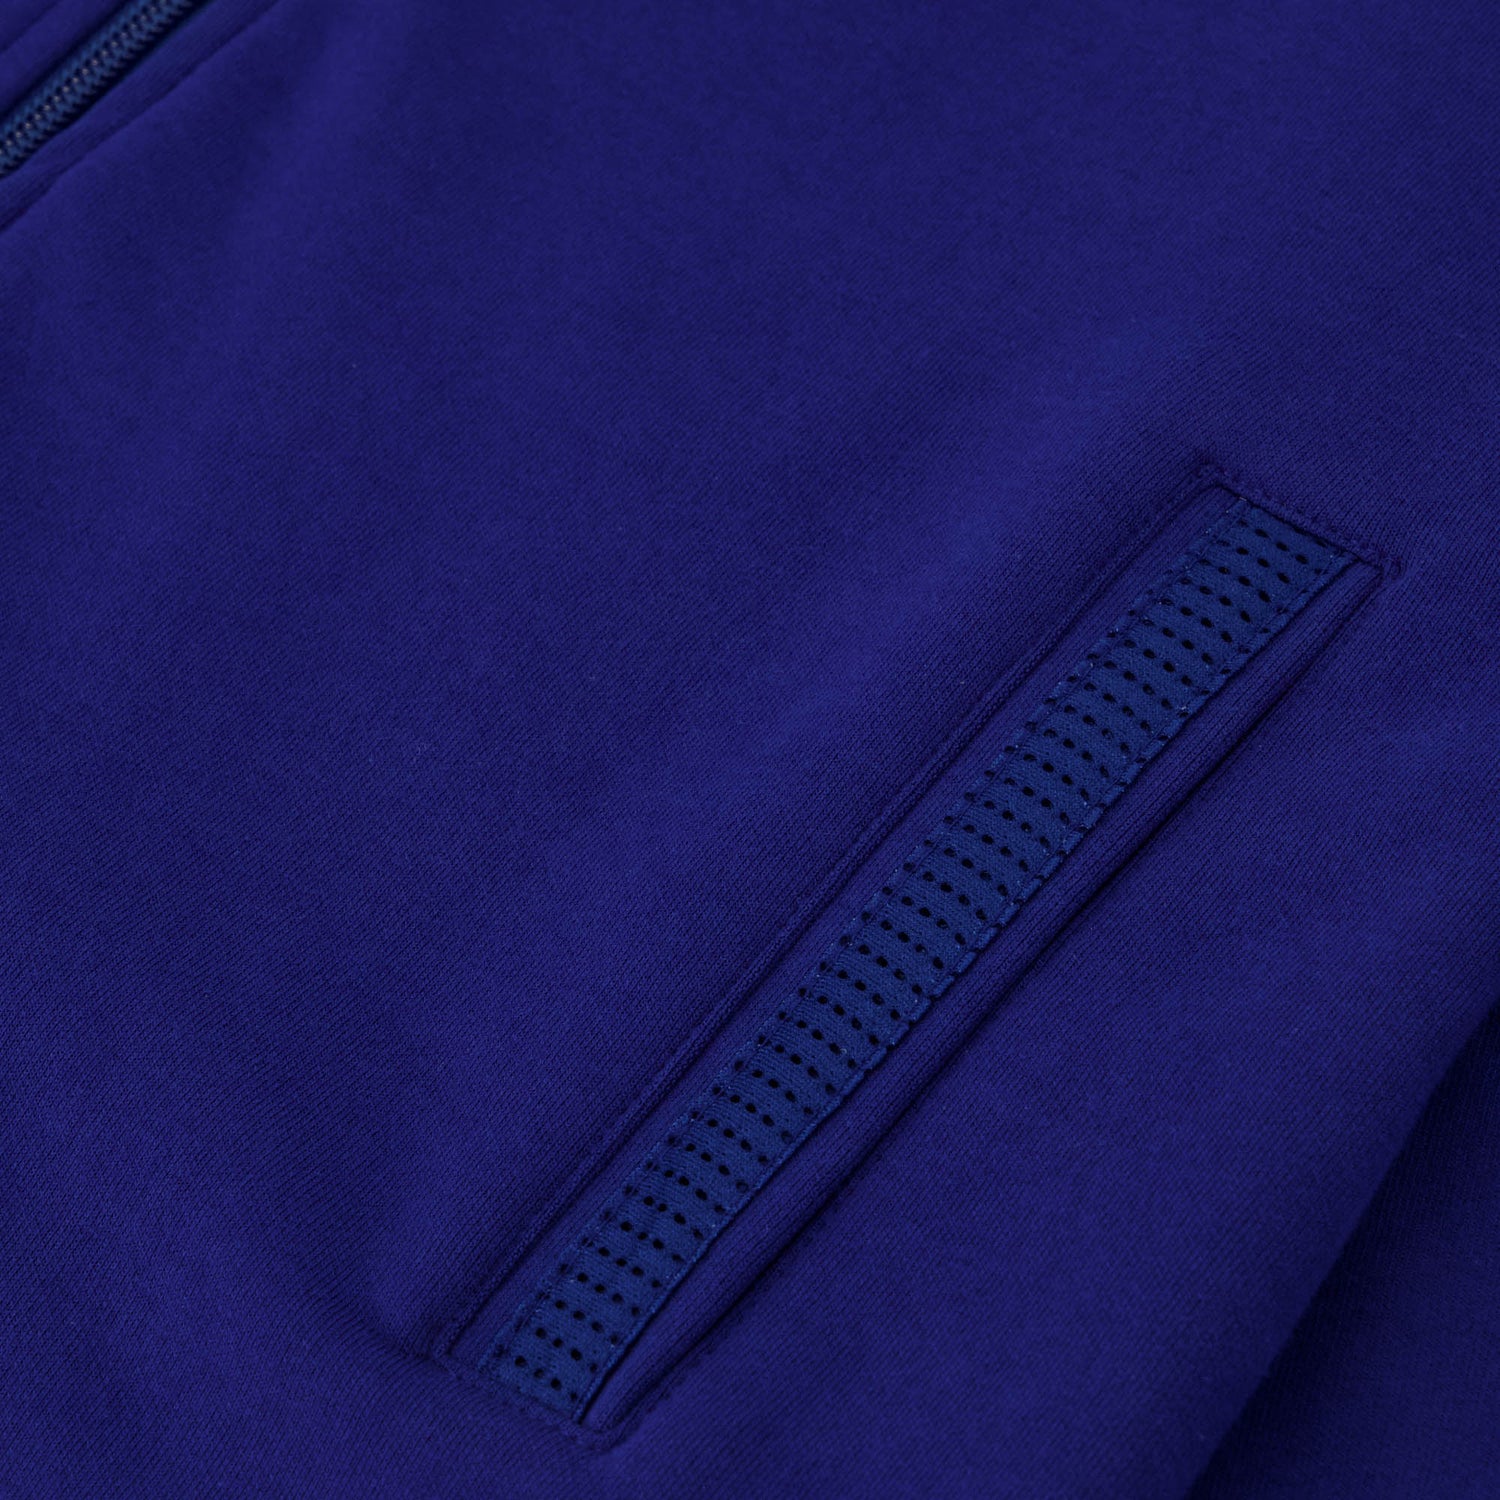 2321324-ESS P24 FZ Sweat N°1 W blue depths  | Sweatshirt für Damen